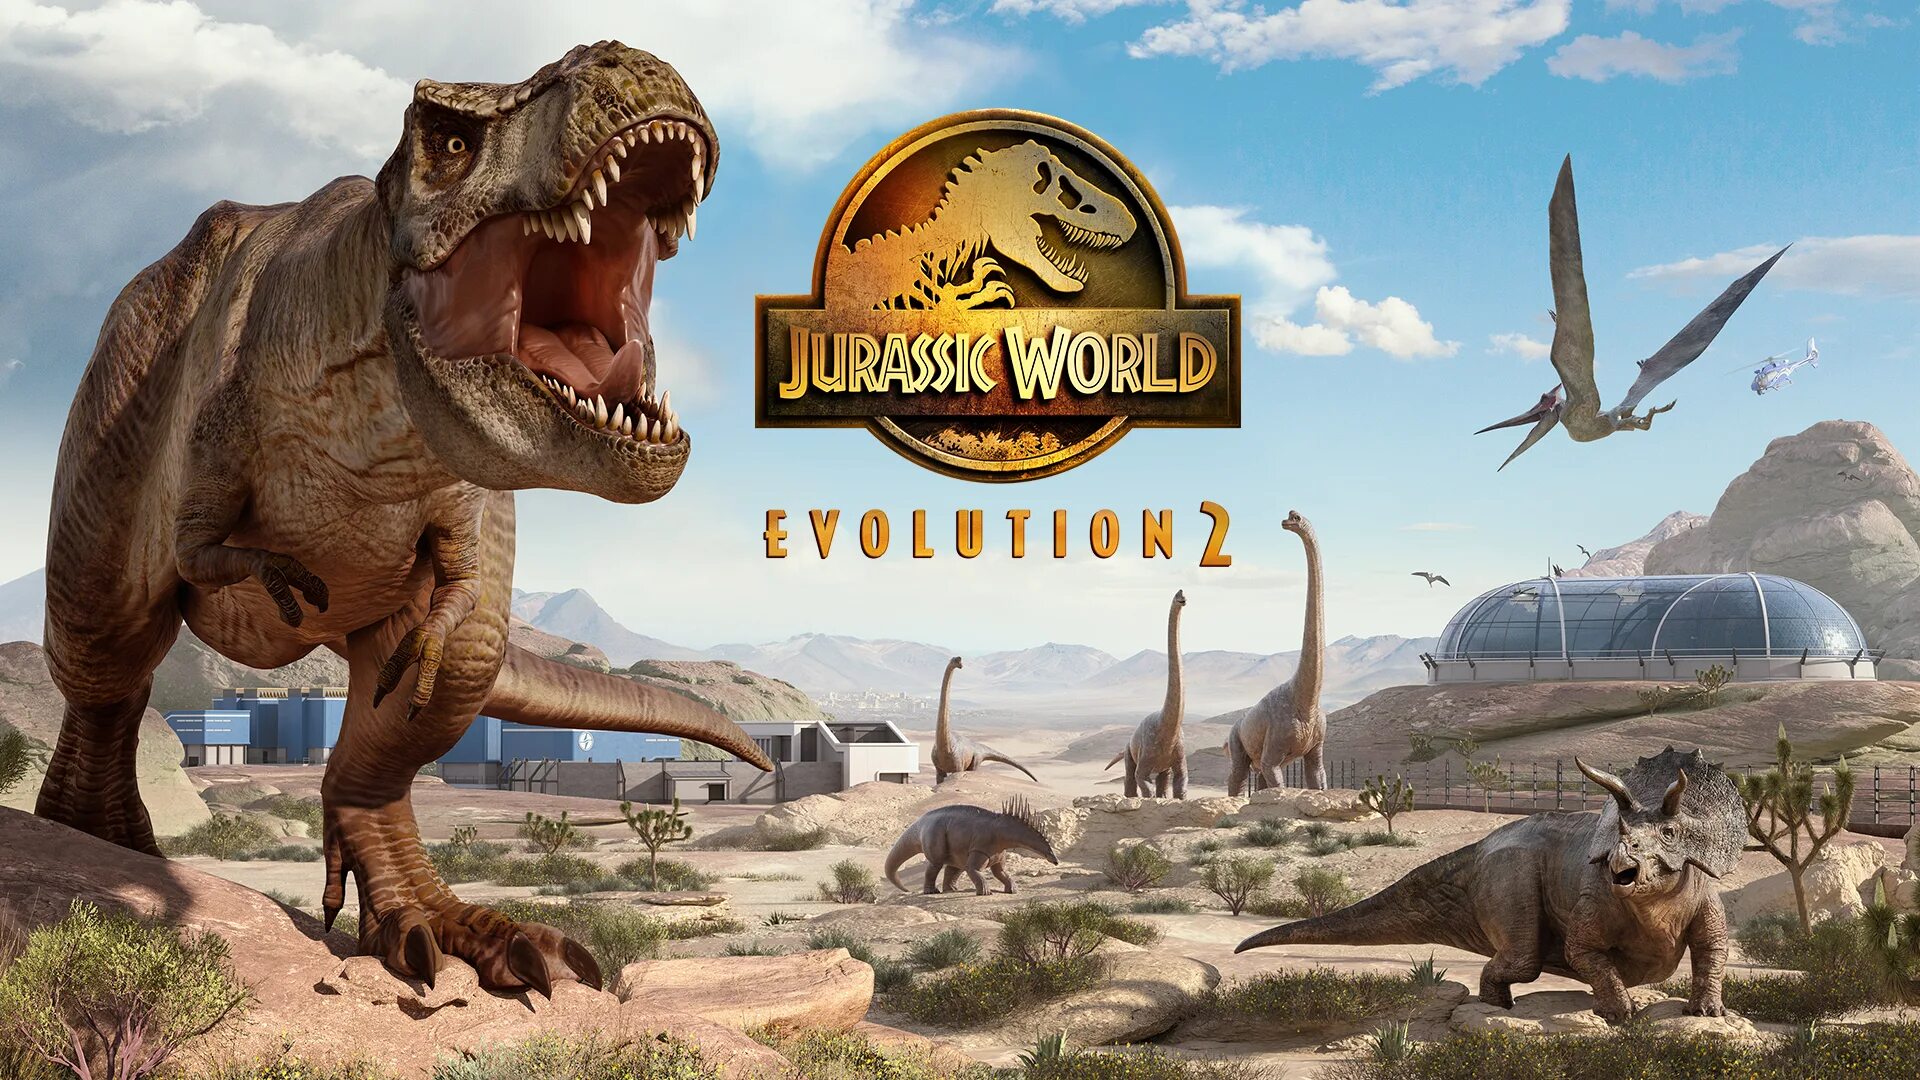 Динозавры периода 2. Игра Jurassic World Evolution. Мир Юрского периода Эволюшн 2. Jurassic World Evolution 2 парк. Jurassic World Evolution 2 динозавры.